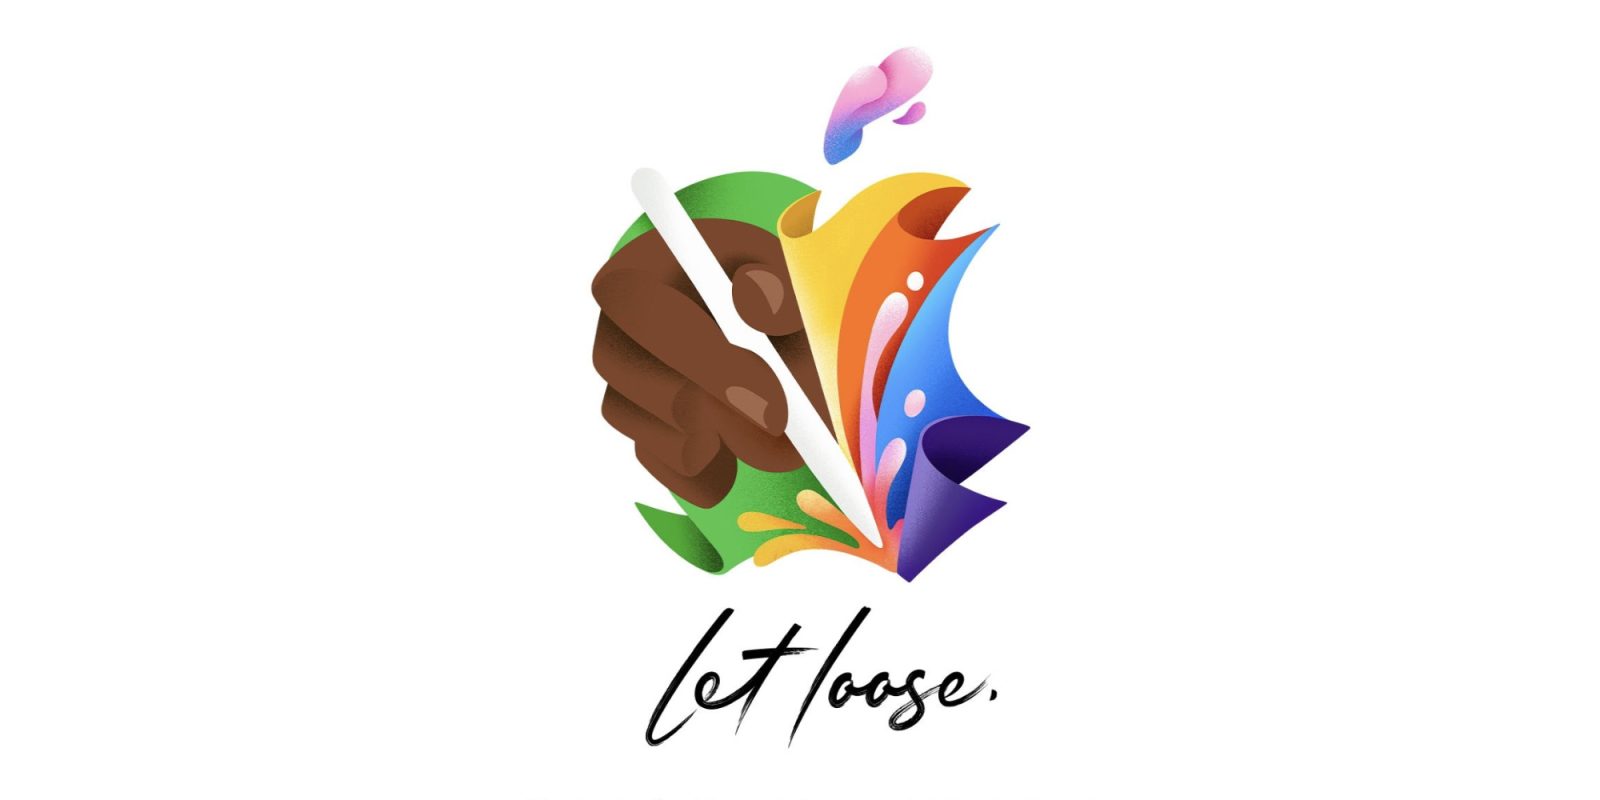 Η εκδήλωση iPad της Apple “Let Loose” θα περιλαμβάνει επίσης μια ειδική εκδήλωση στο Λονδίνο